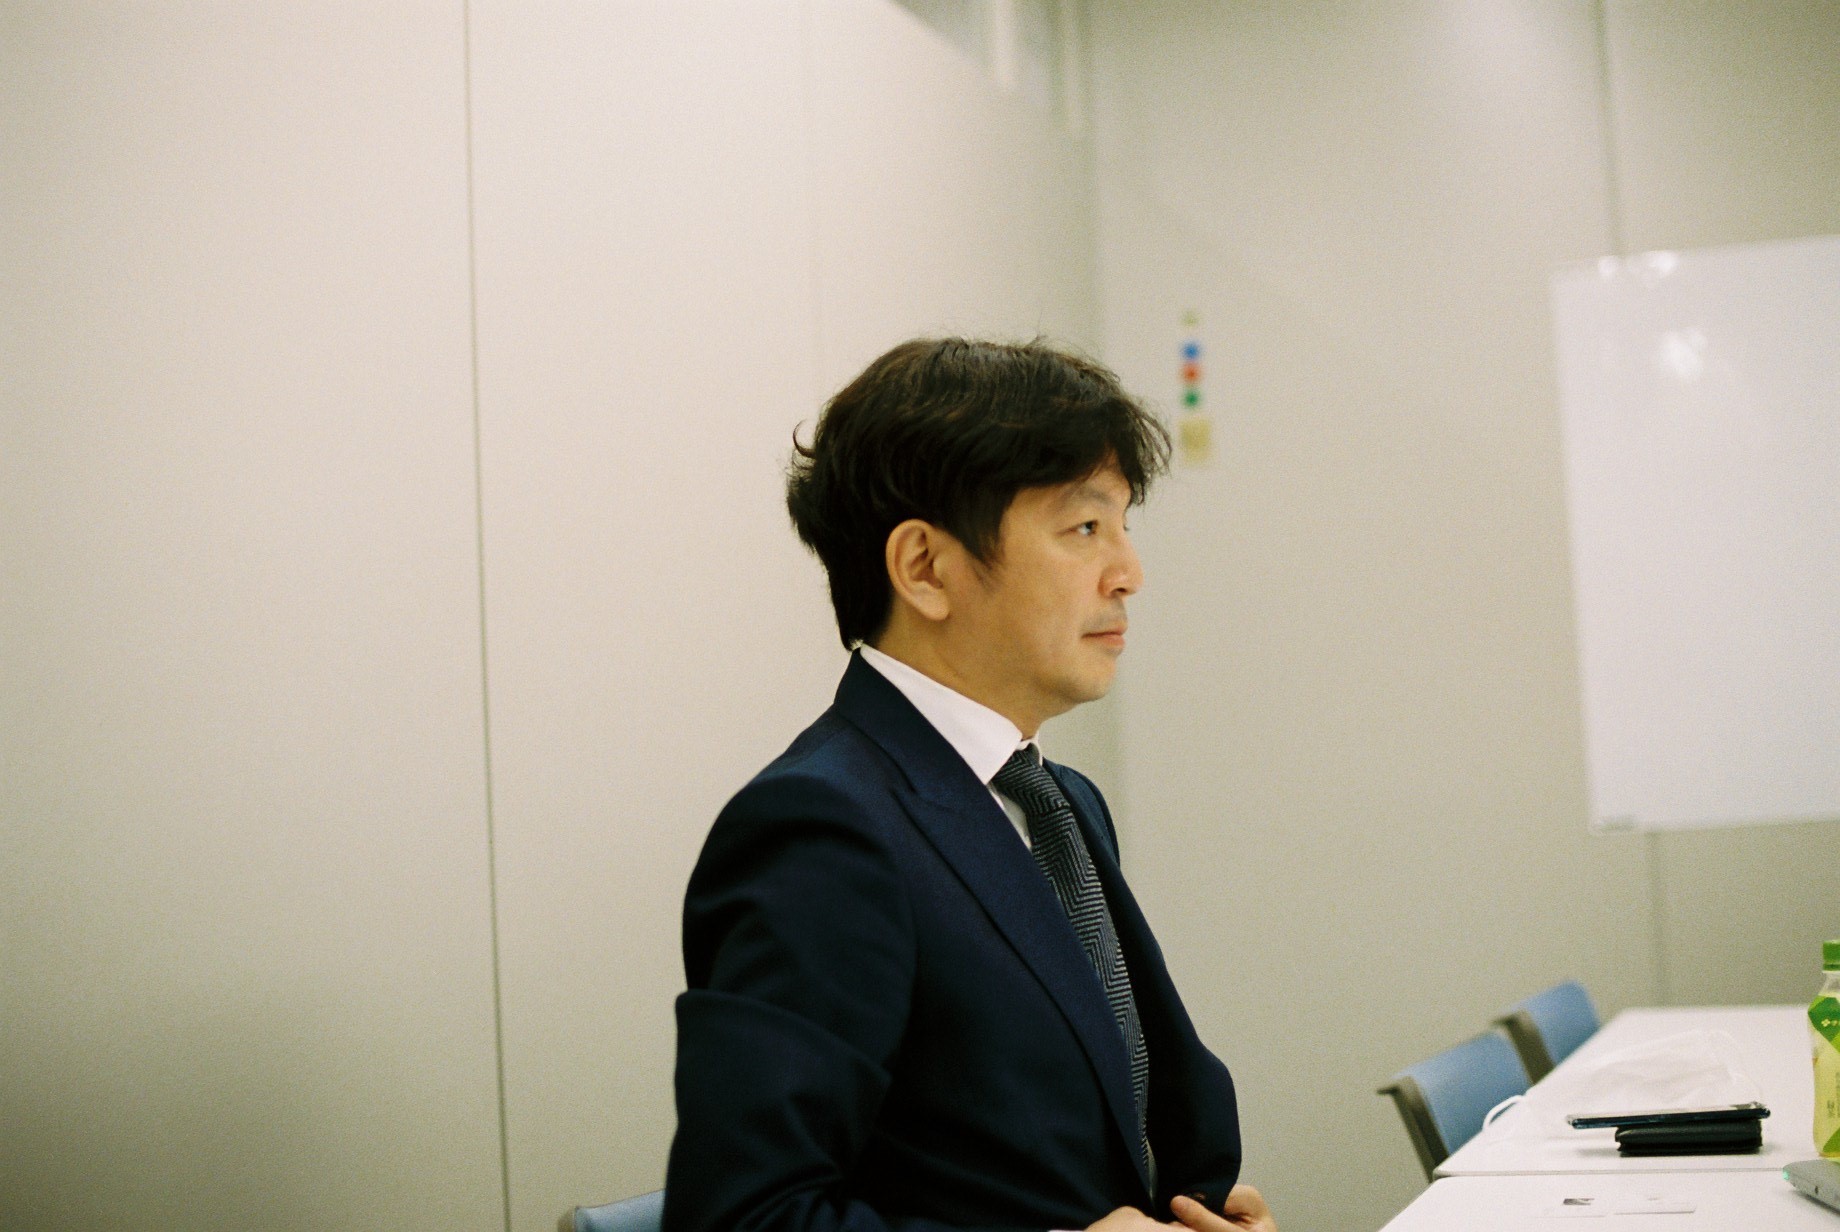 インタビュー中の質問を聞く映画・アニメ事業部長の渡辺信也氏